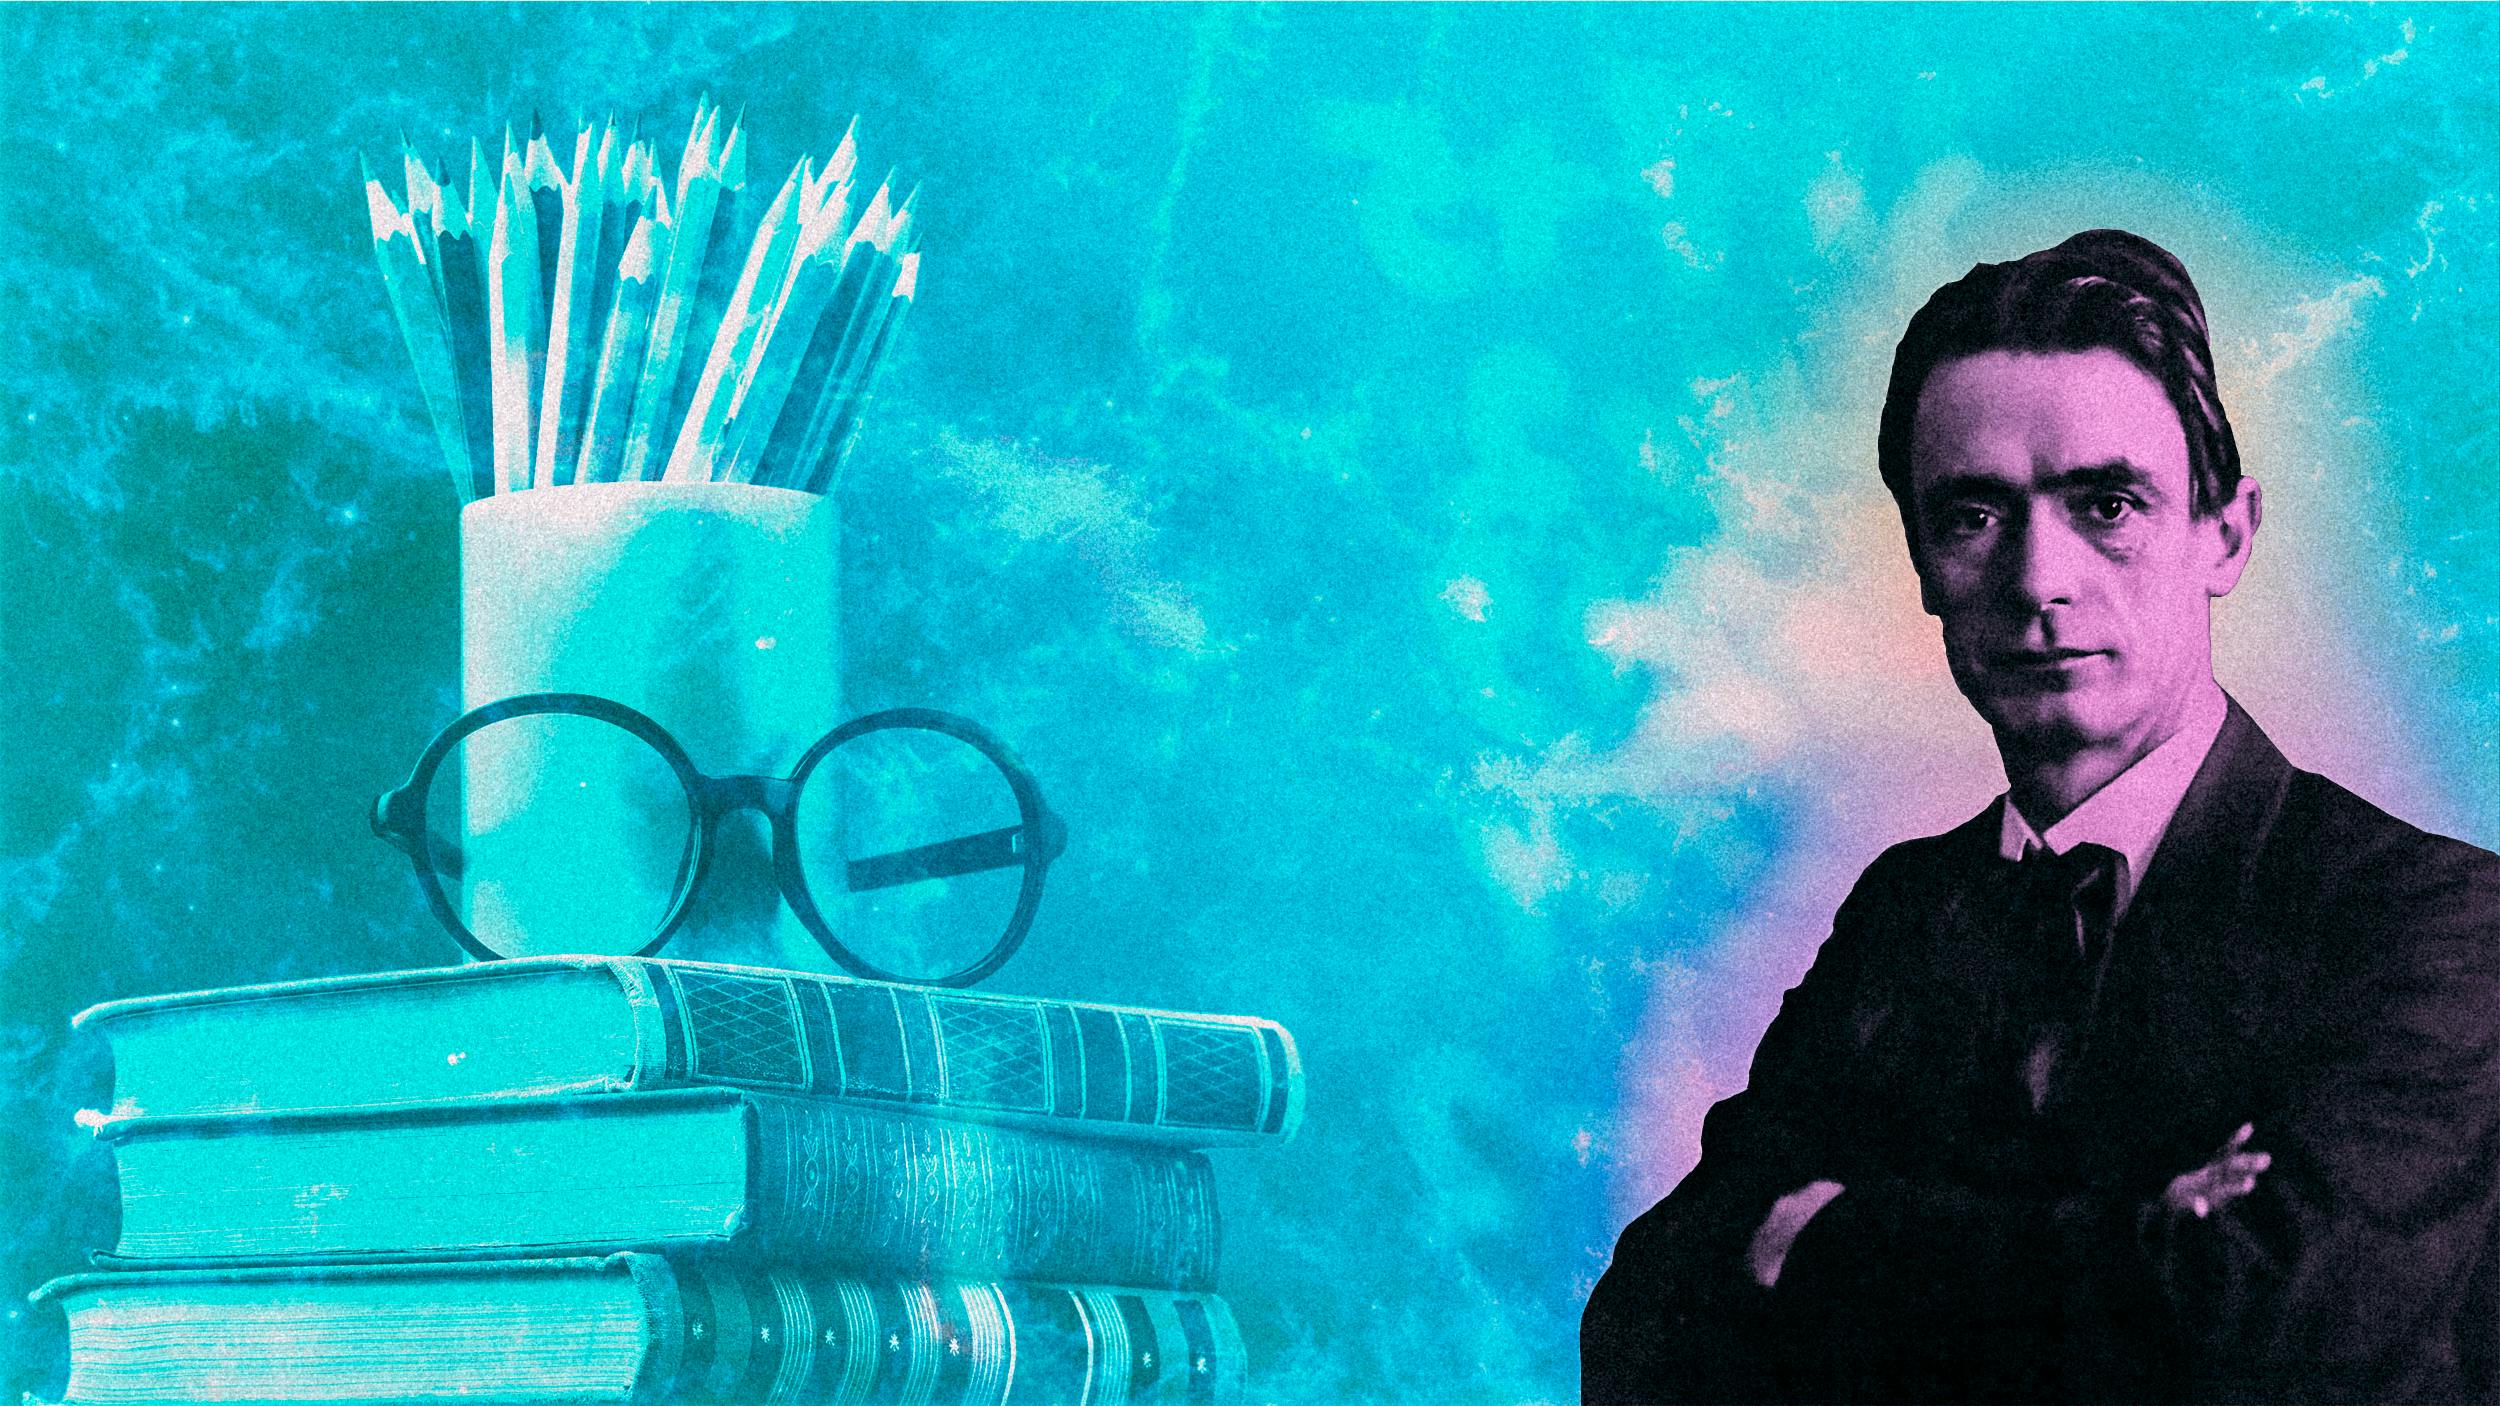 Links ein Stapel Bücher, auf dem eine Brille und einige Stifte liegen. Rechts im Bild ist der Gründer der Waldorfschulen, Rudolf Steiner, abgebildet.